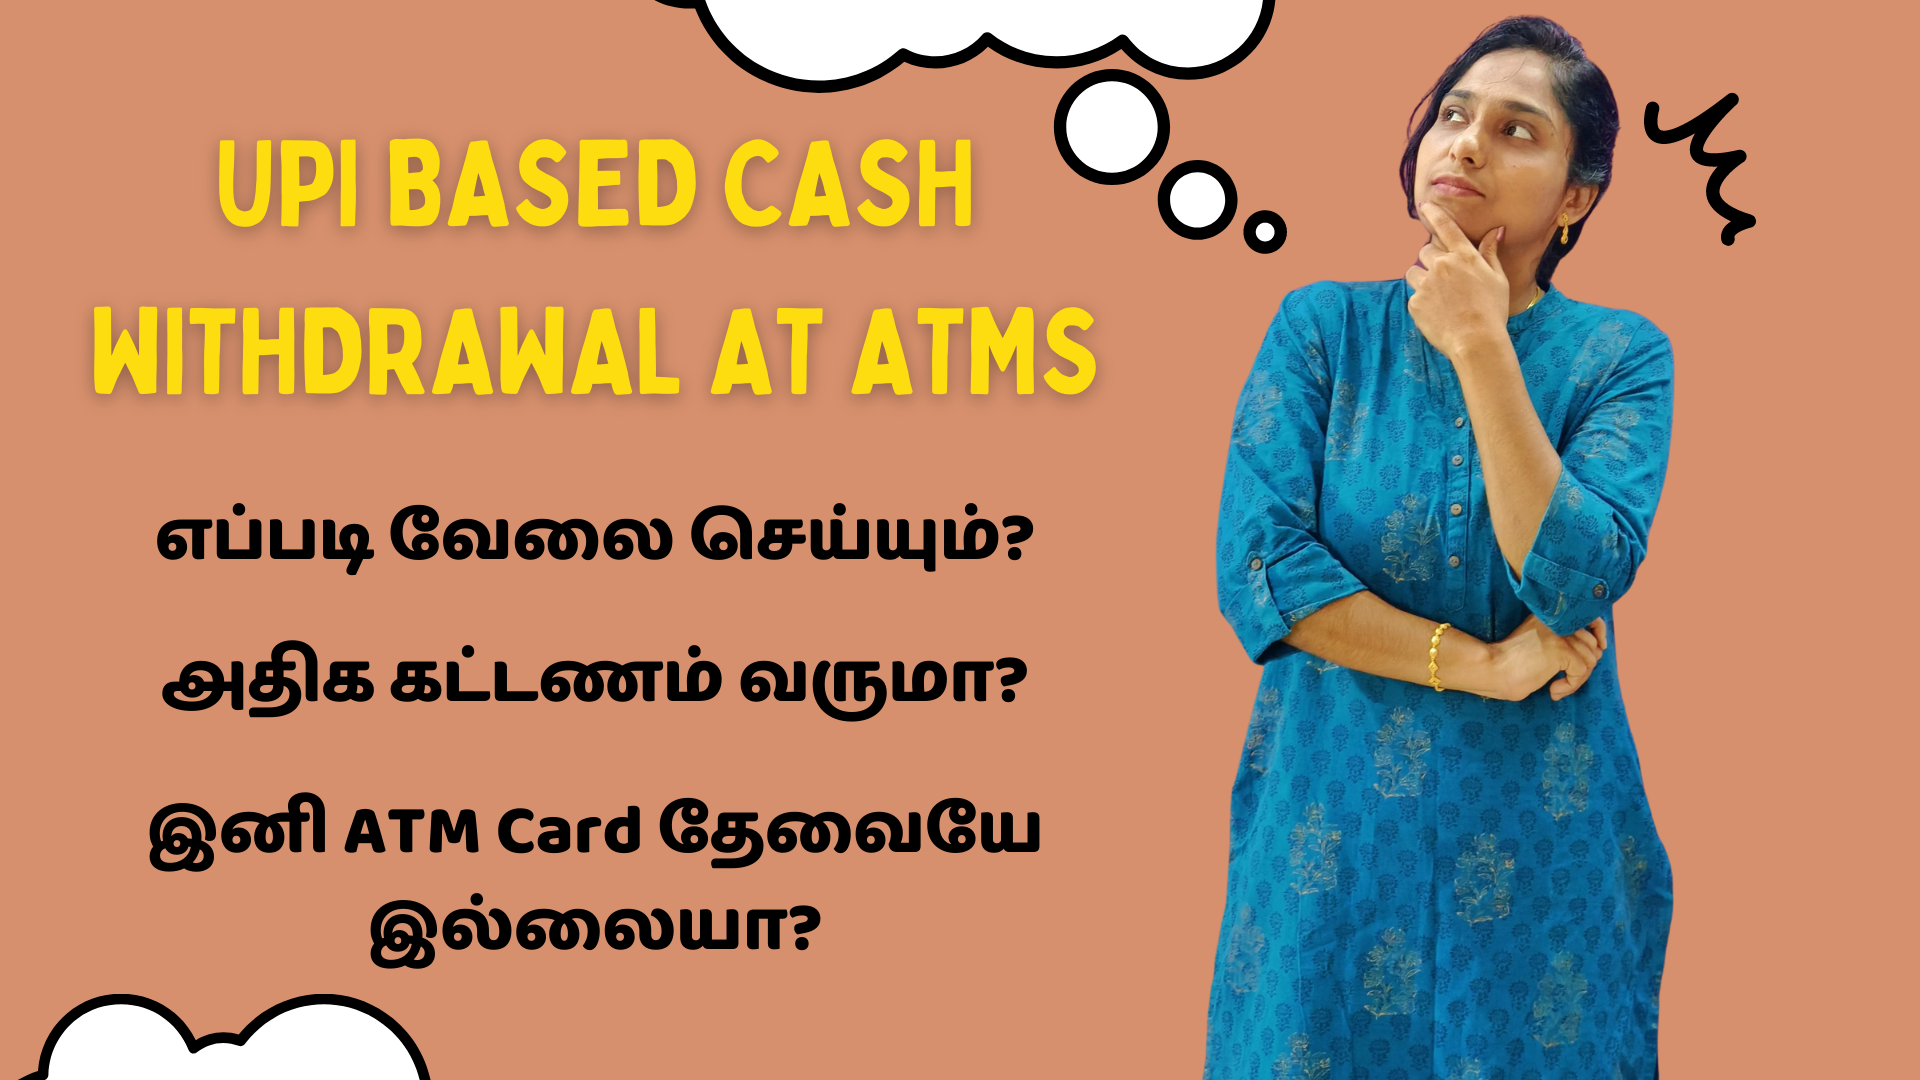 UPI Based Cash Withdrawal At ATMs